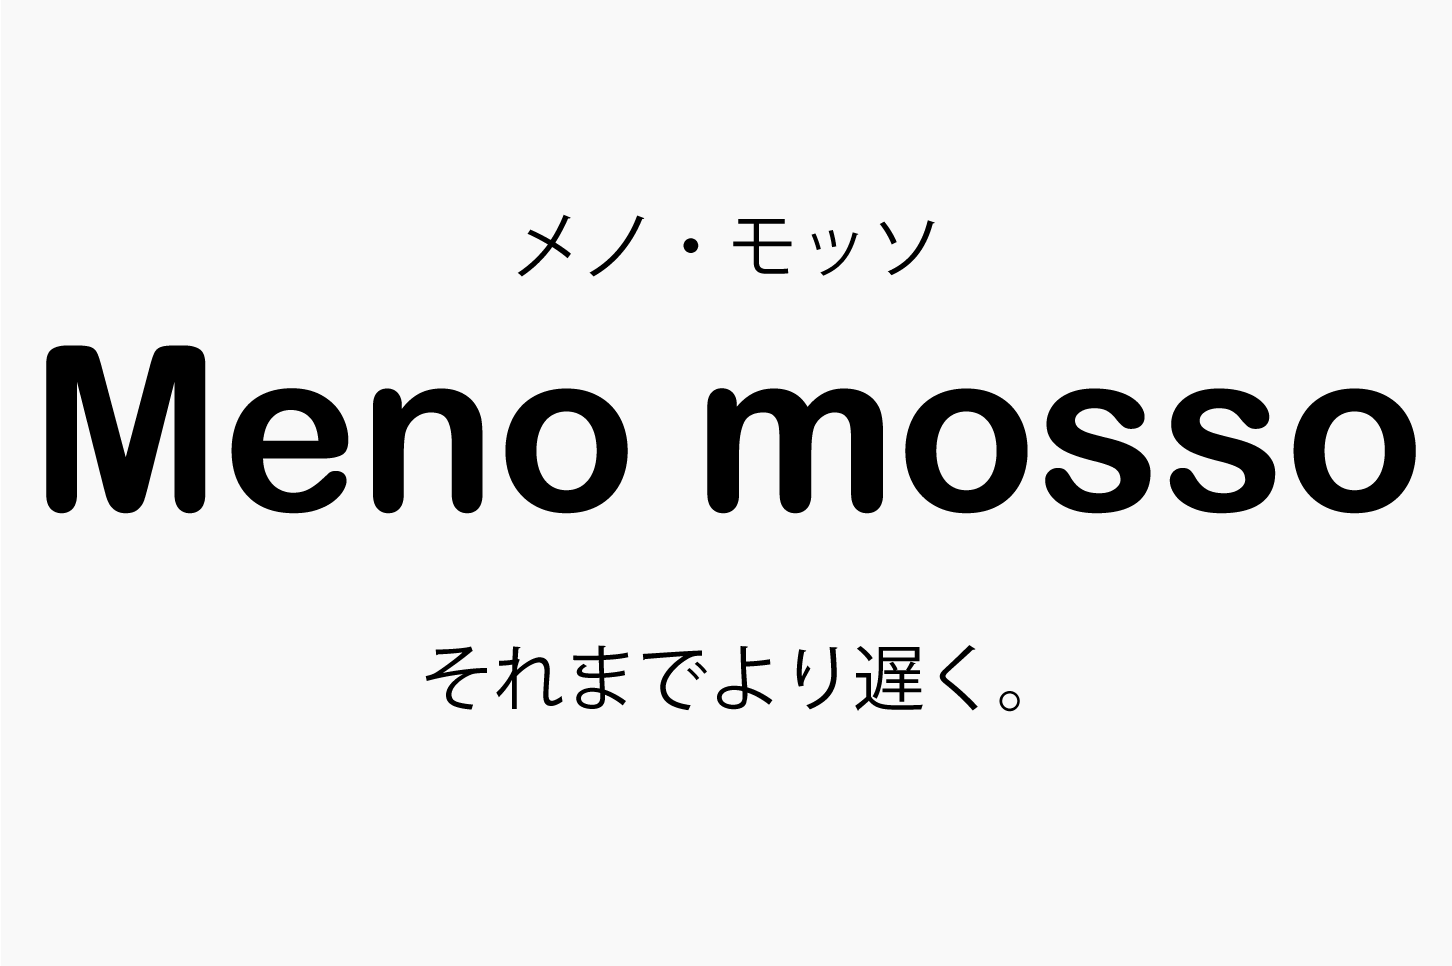 Meno mosso（メノモッソ）それまでより遅く。